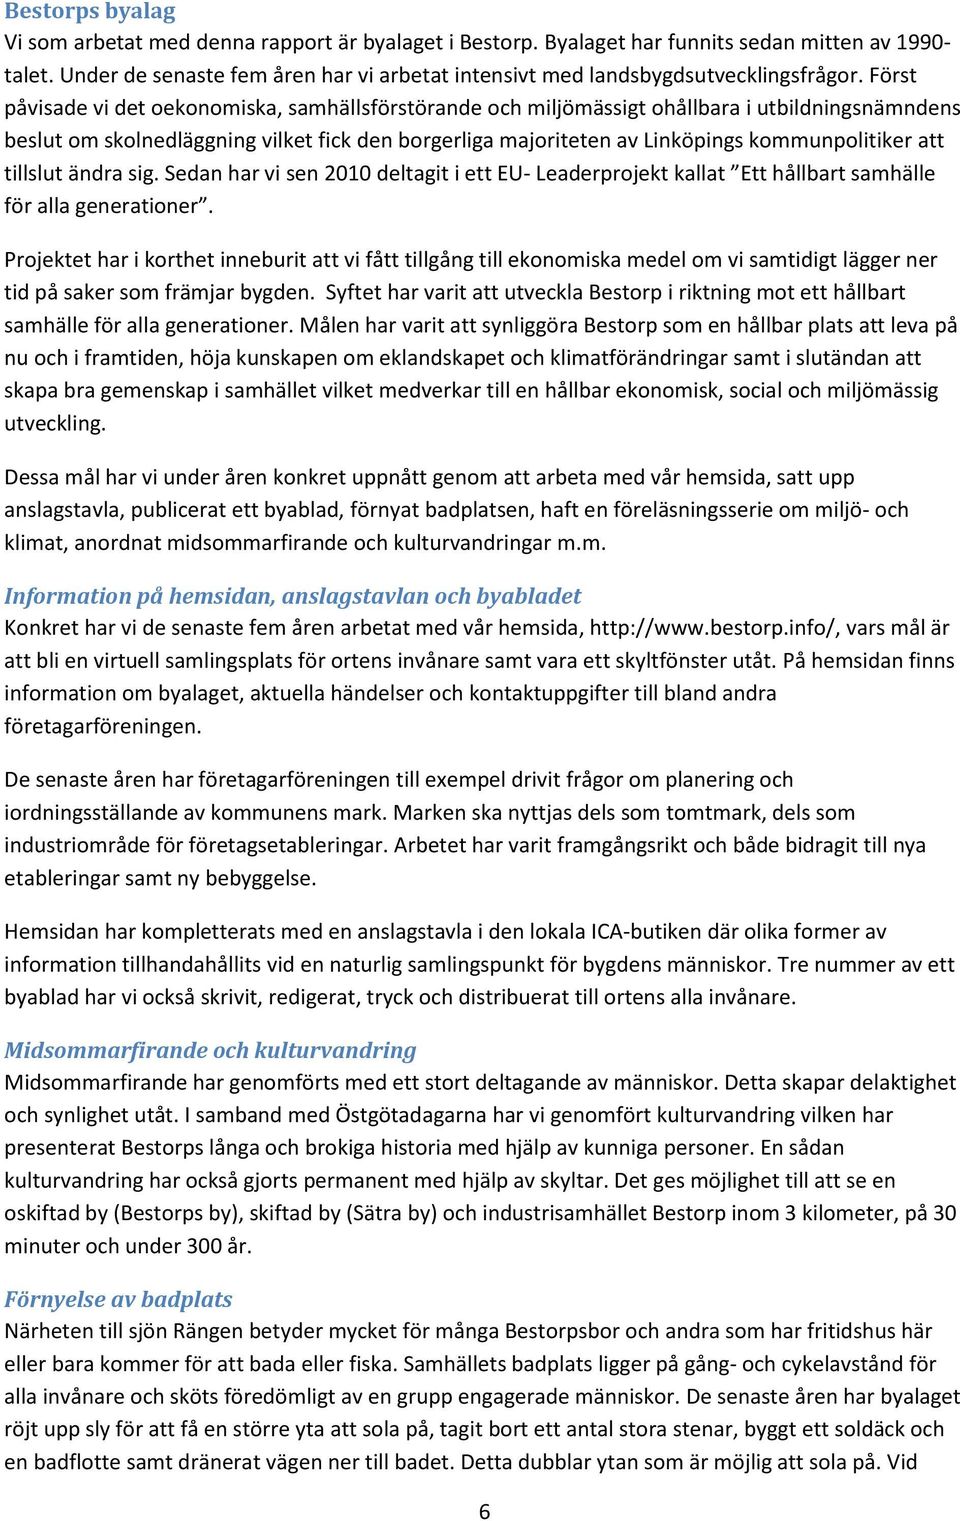 Först påvisade vi det oekonomiska, samhällsförstörande och miljömässigt ohållbara i utbildningsnämndens beslut om skolnedläggning vilket fick den borgerliga majoriteten av Linköpings kommunpolitiker